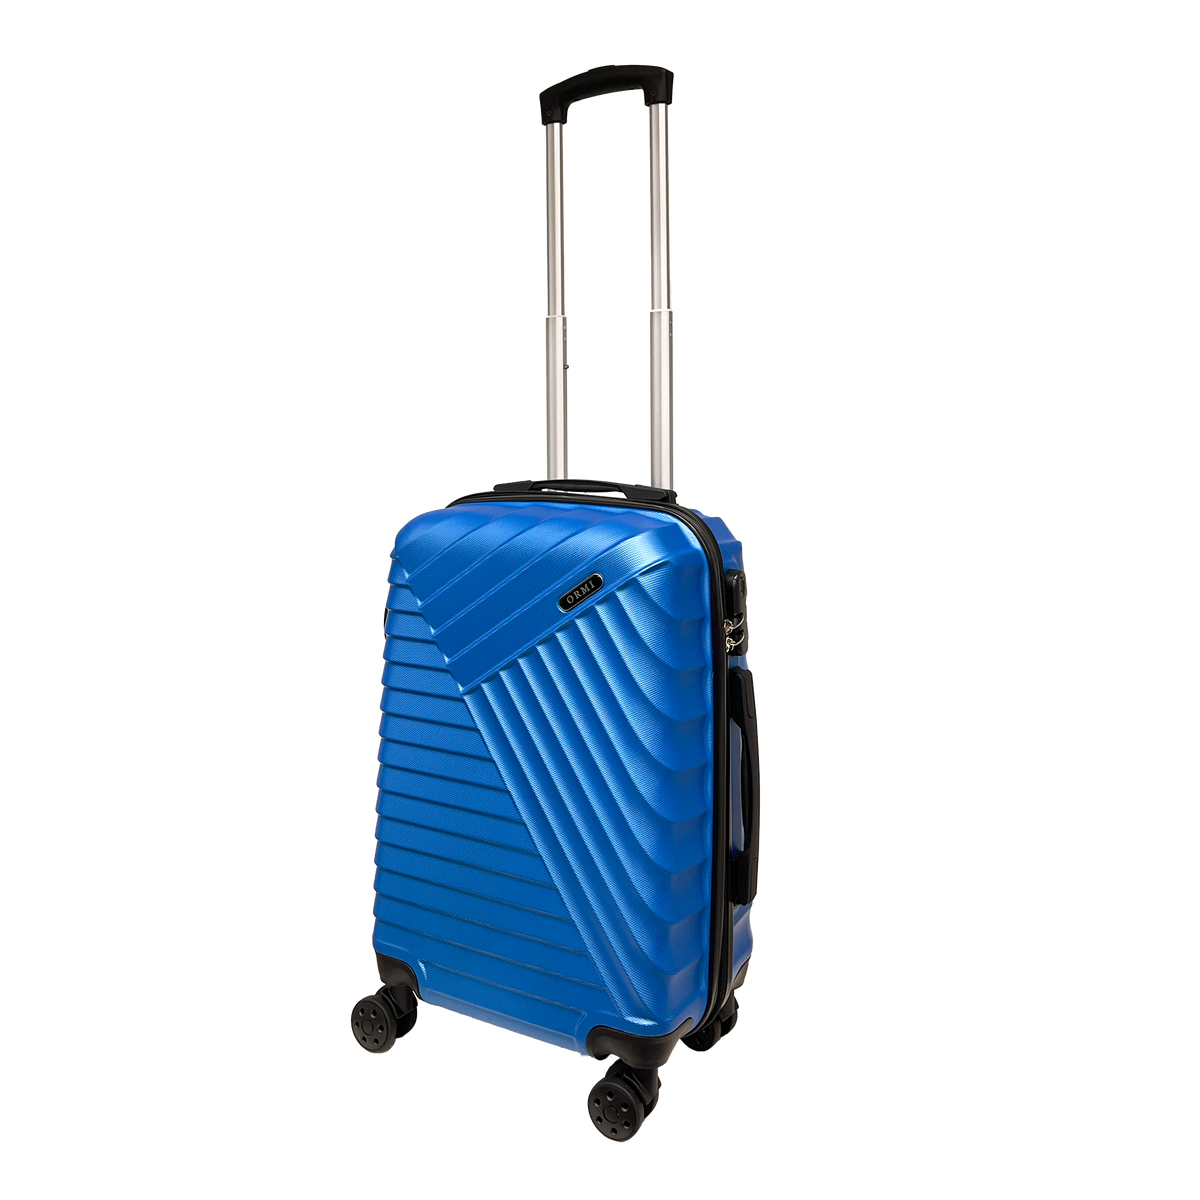 Velika oštra prtljaga kruta prtljaga 55x37x22cm Ultra Light in ABS - držite prtljagu